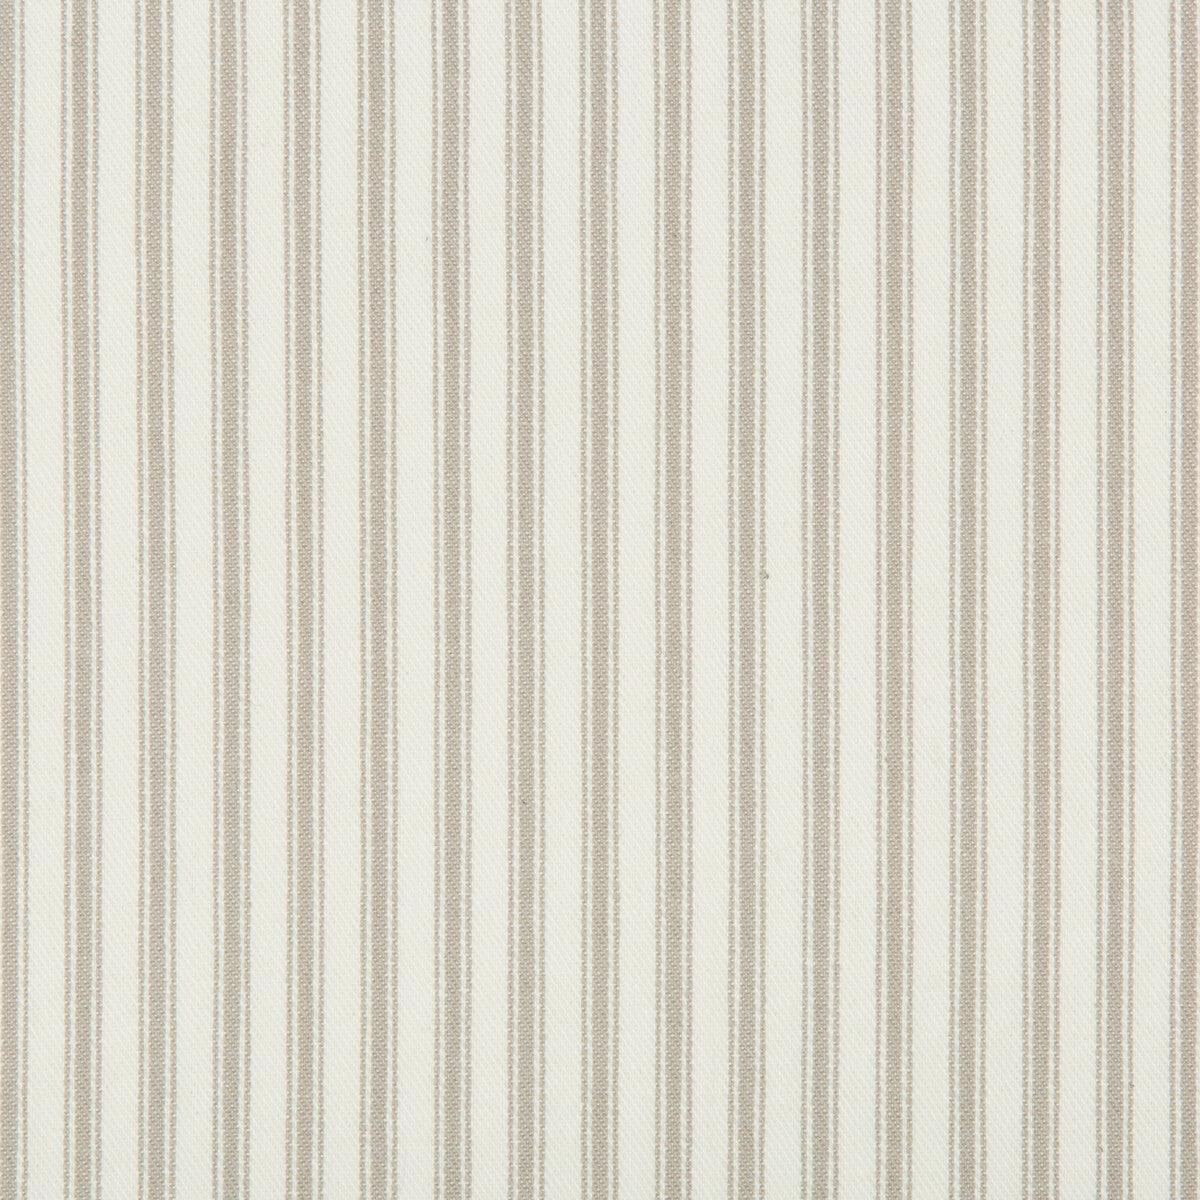 Kravet Basics fabric in 31571-11 color - pattern 31571.11.0 - by Kravet Basics